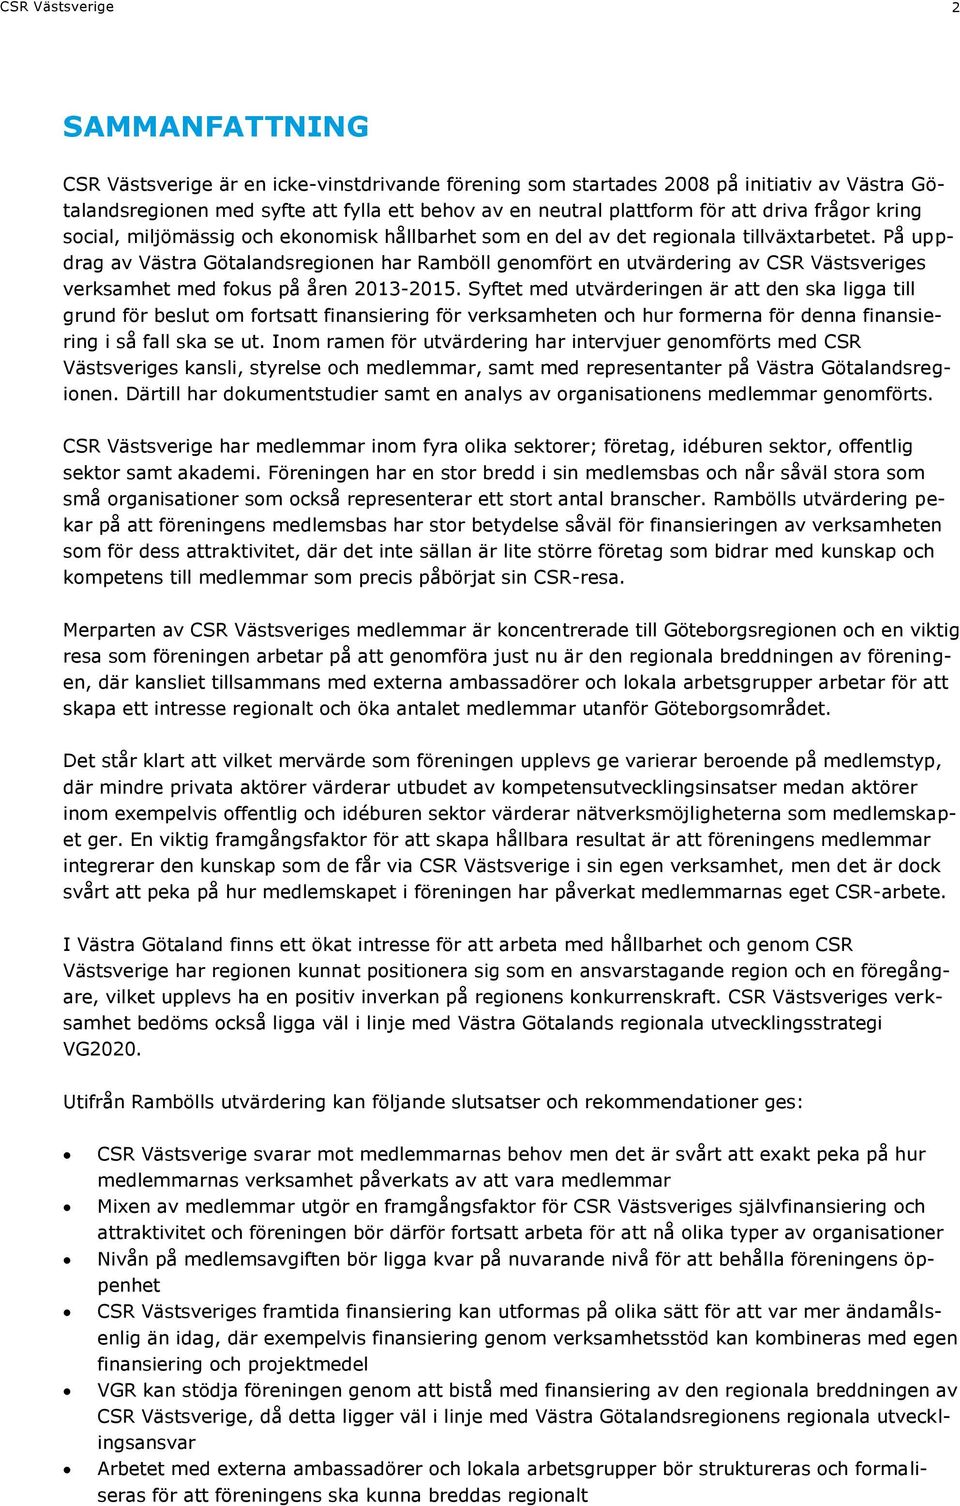 På uppdrag av Västra Götalandsregionen har Ramböll genomfört en utvärdering av CSR Västsveriges verksamhet med fokus på åren 2013-2015.